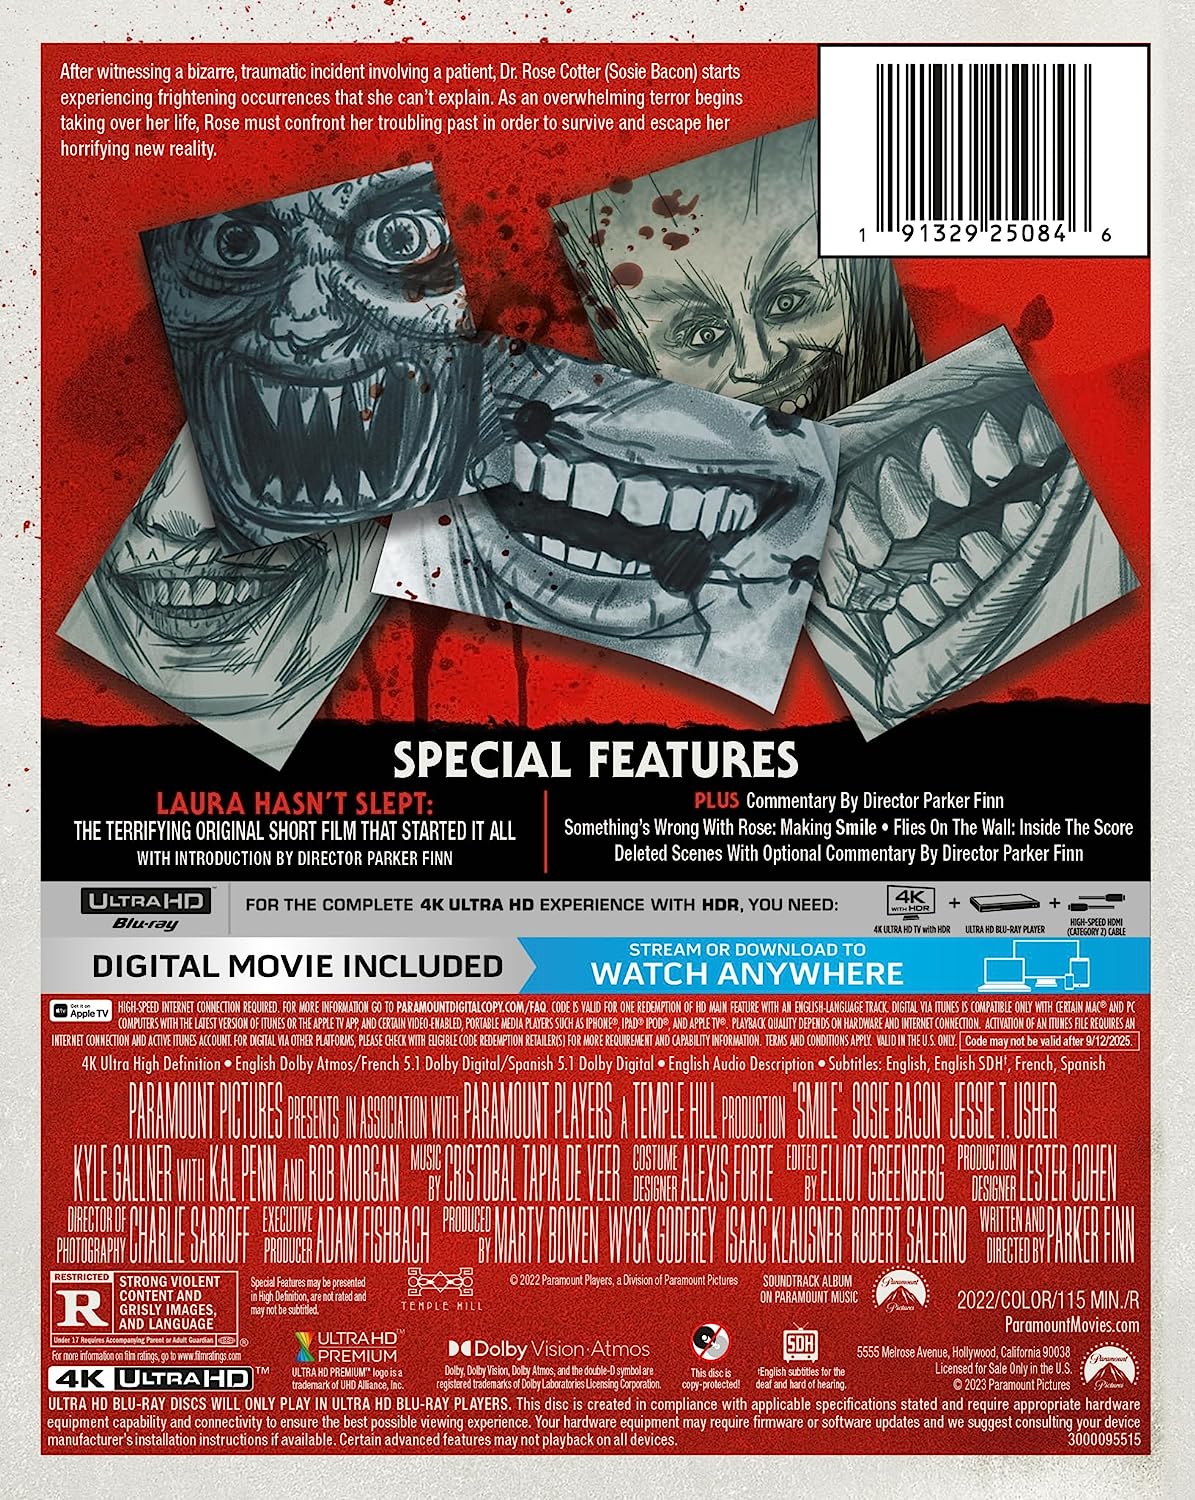 Scream 1, 2, 3, 5 (2022), IV (6) 4K SteelBook LOT (UHD Blu-ray Digital)  OOP